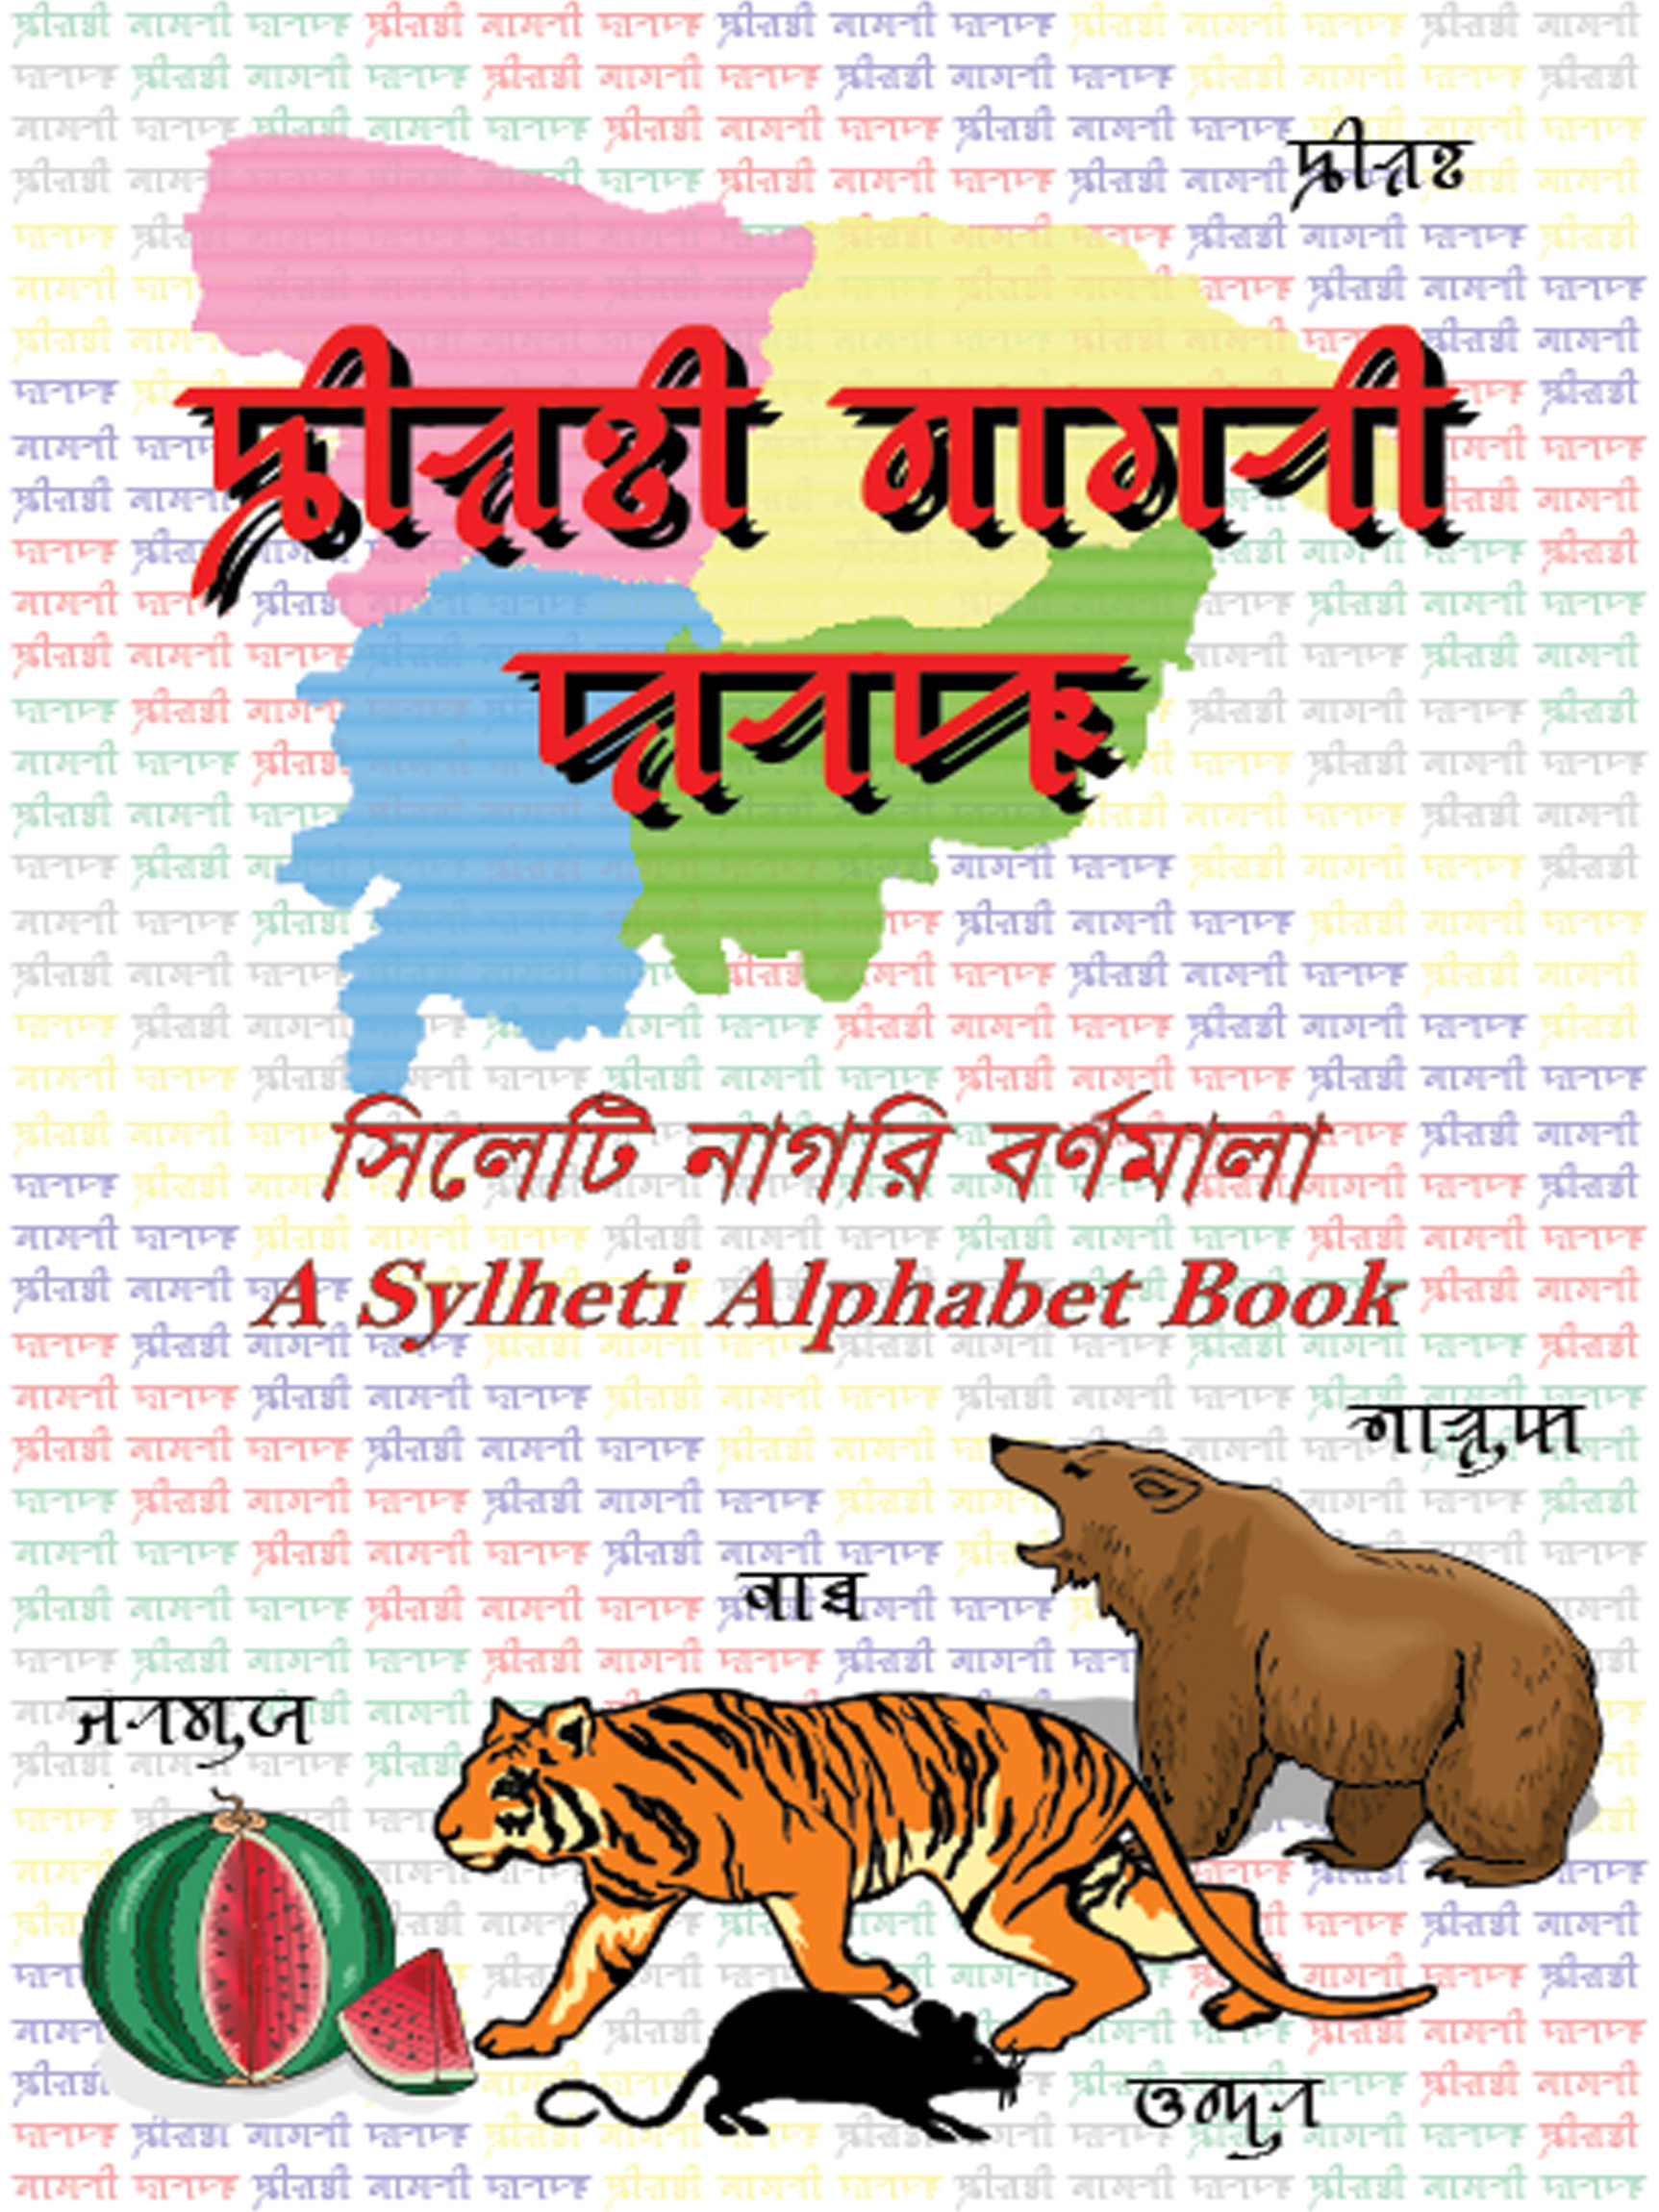 Syloti Nagri Bornomala (alphabet) book